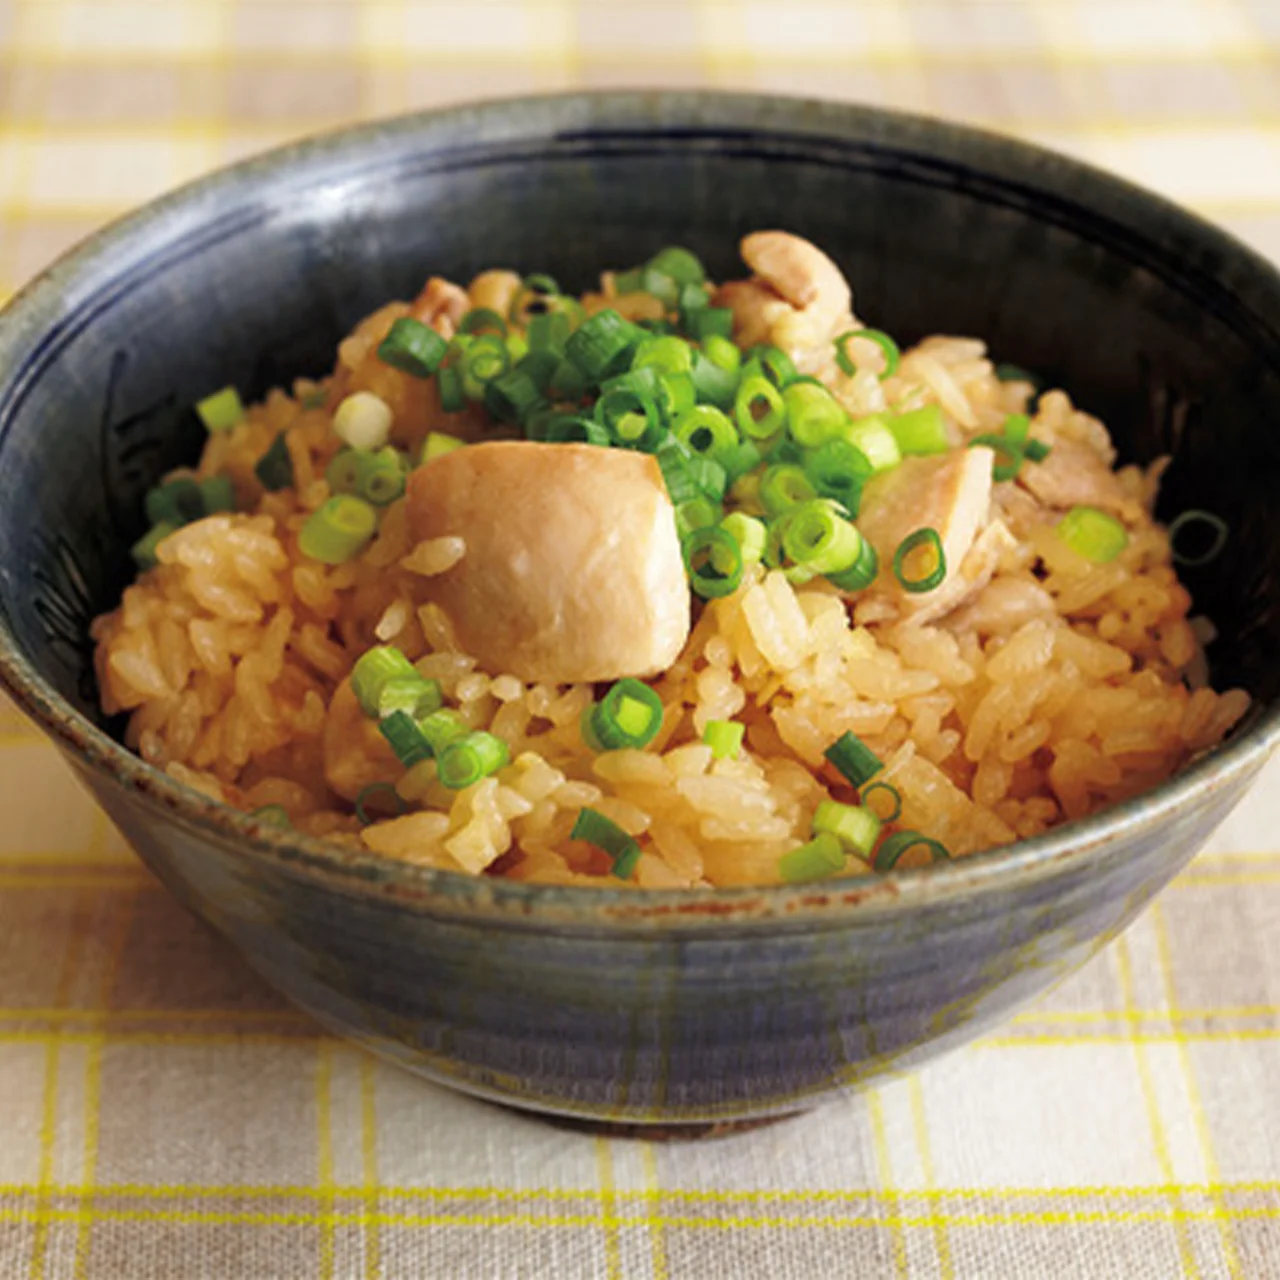 とり肉としょうがだけの炊き込みご飯 By瀬尾幸子さんの料理レシピ プロのレシピならレタスクラブ